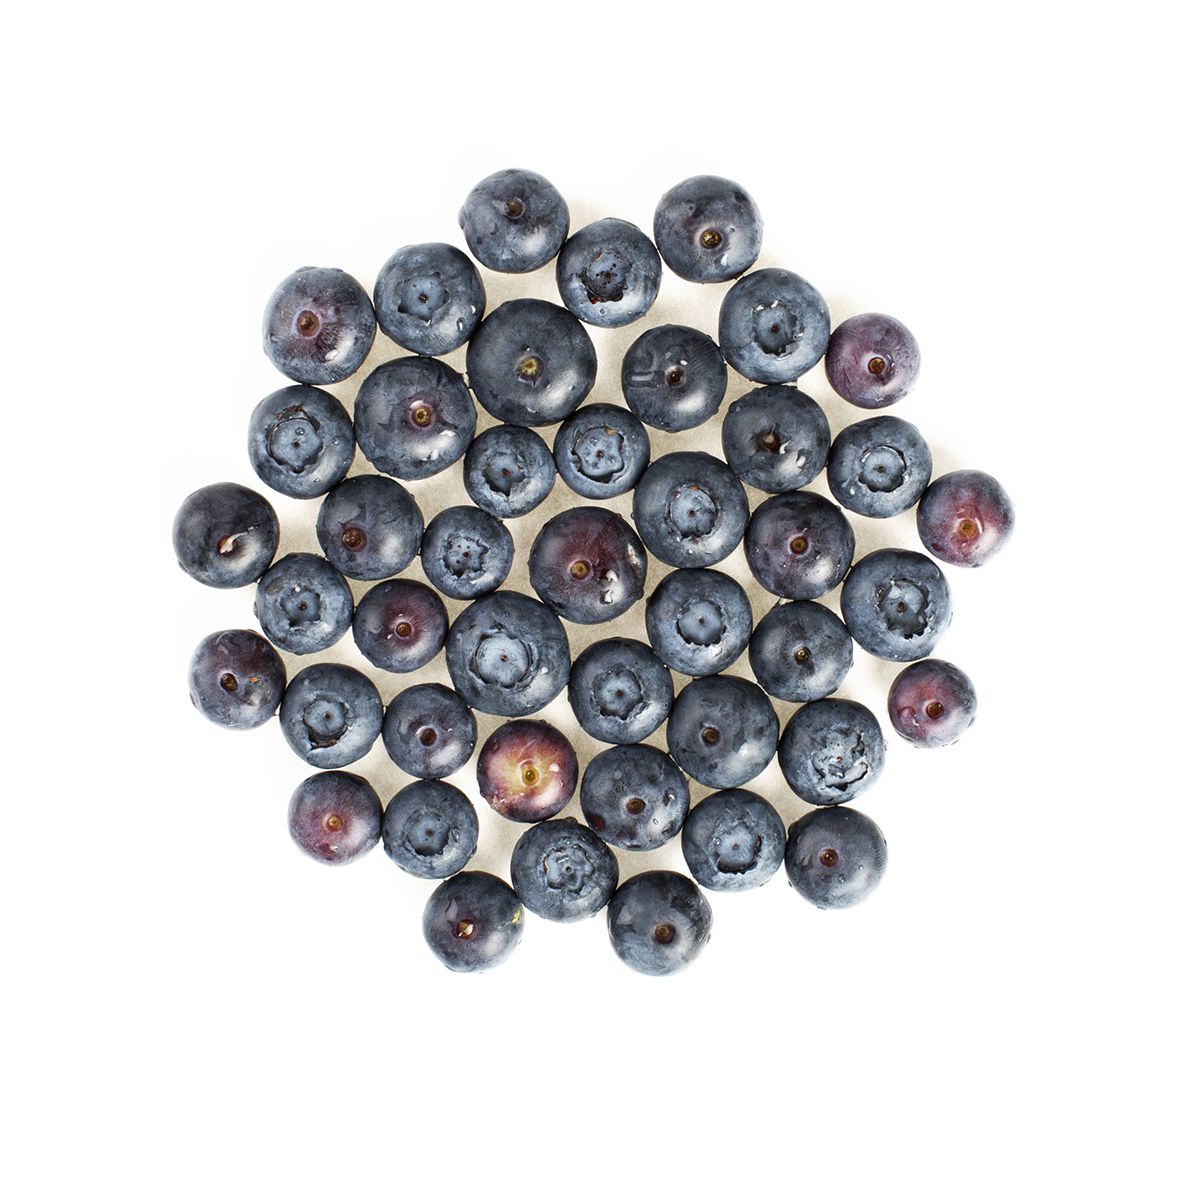 BoxNCase Frozen IQF Blueberries